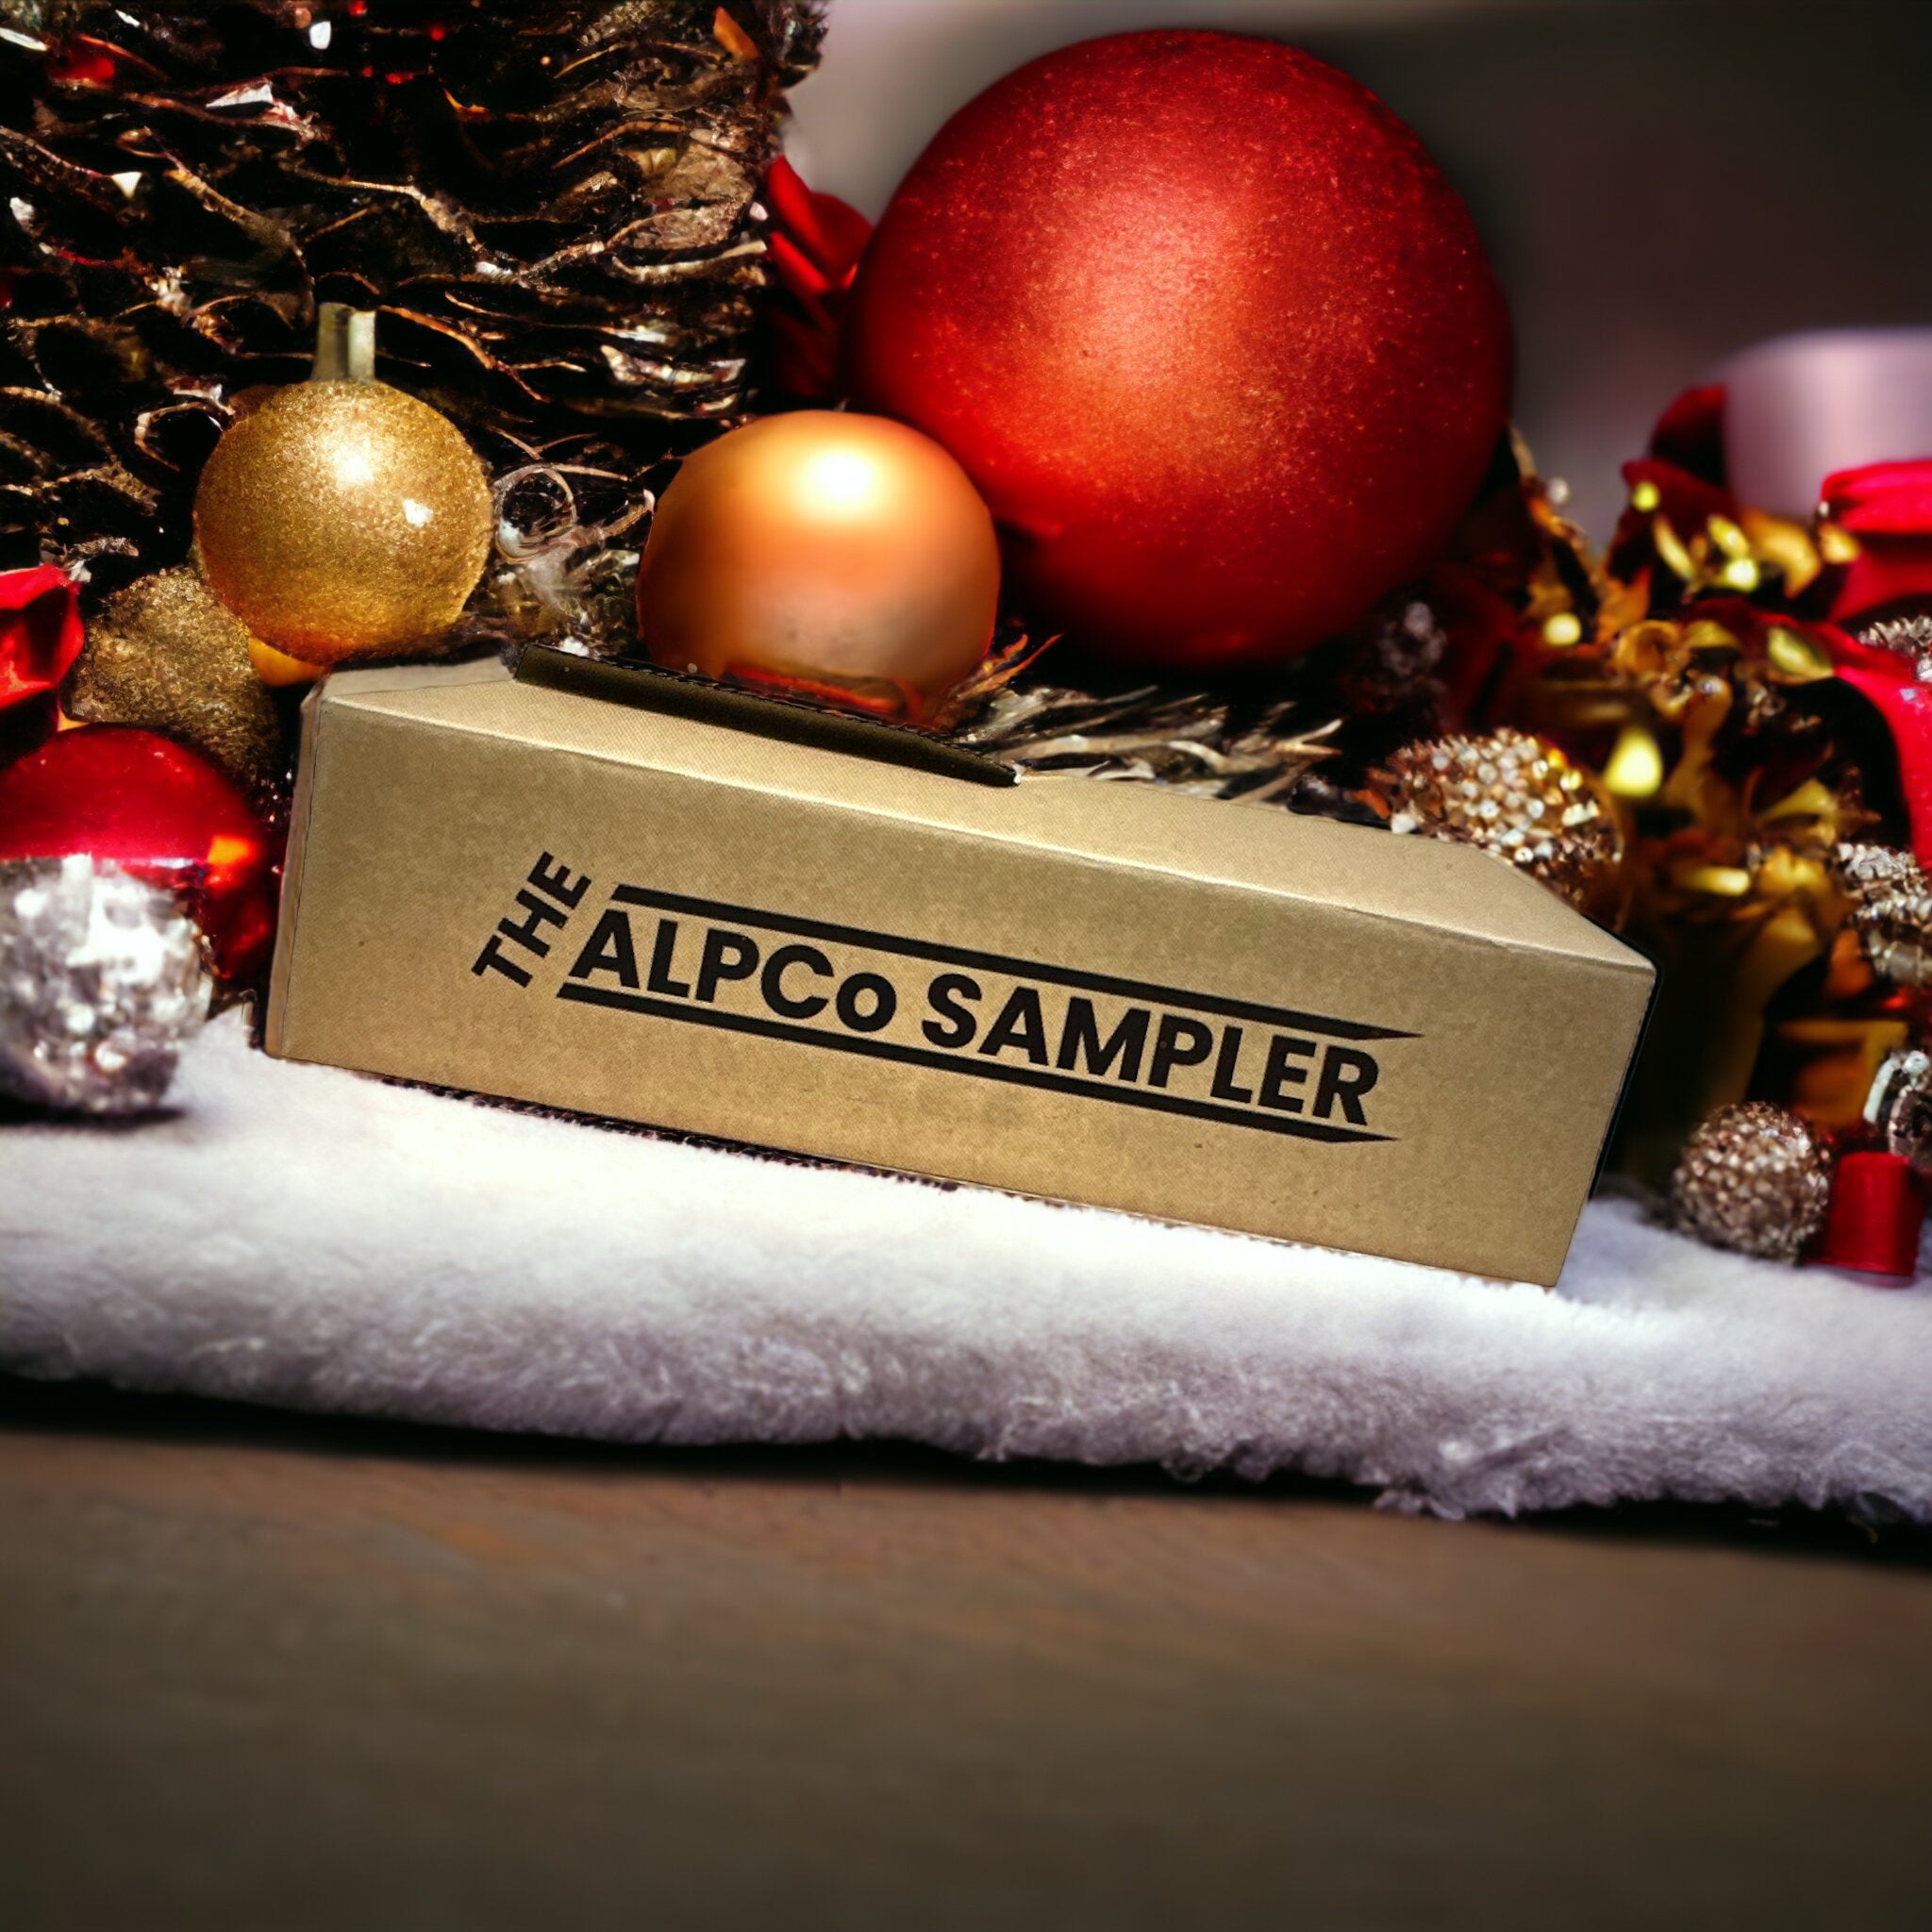 The ALPCo Sampler